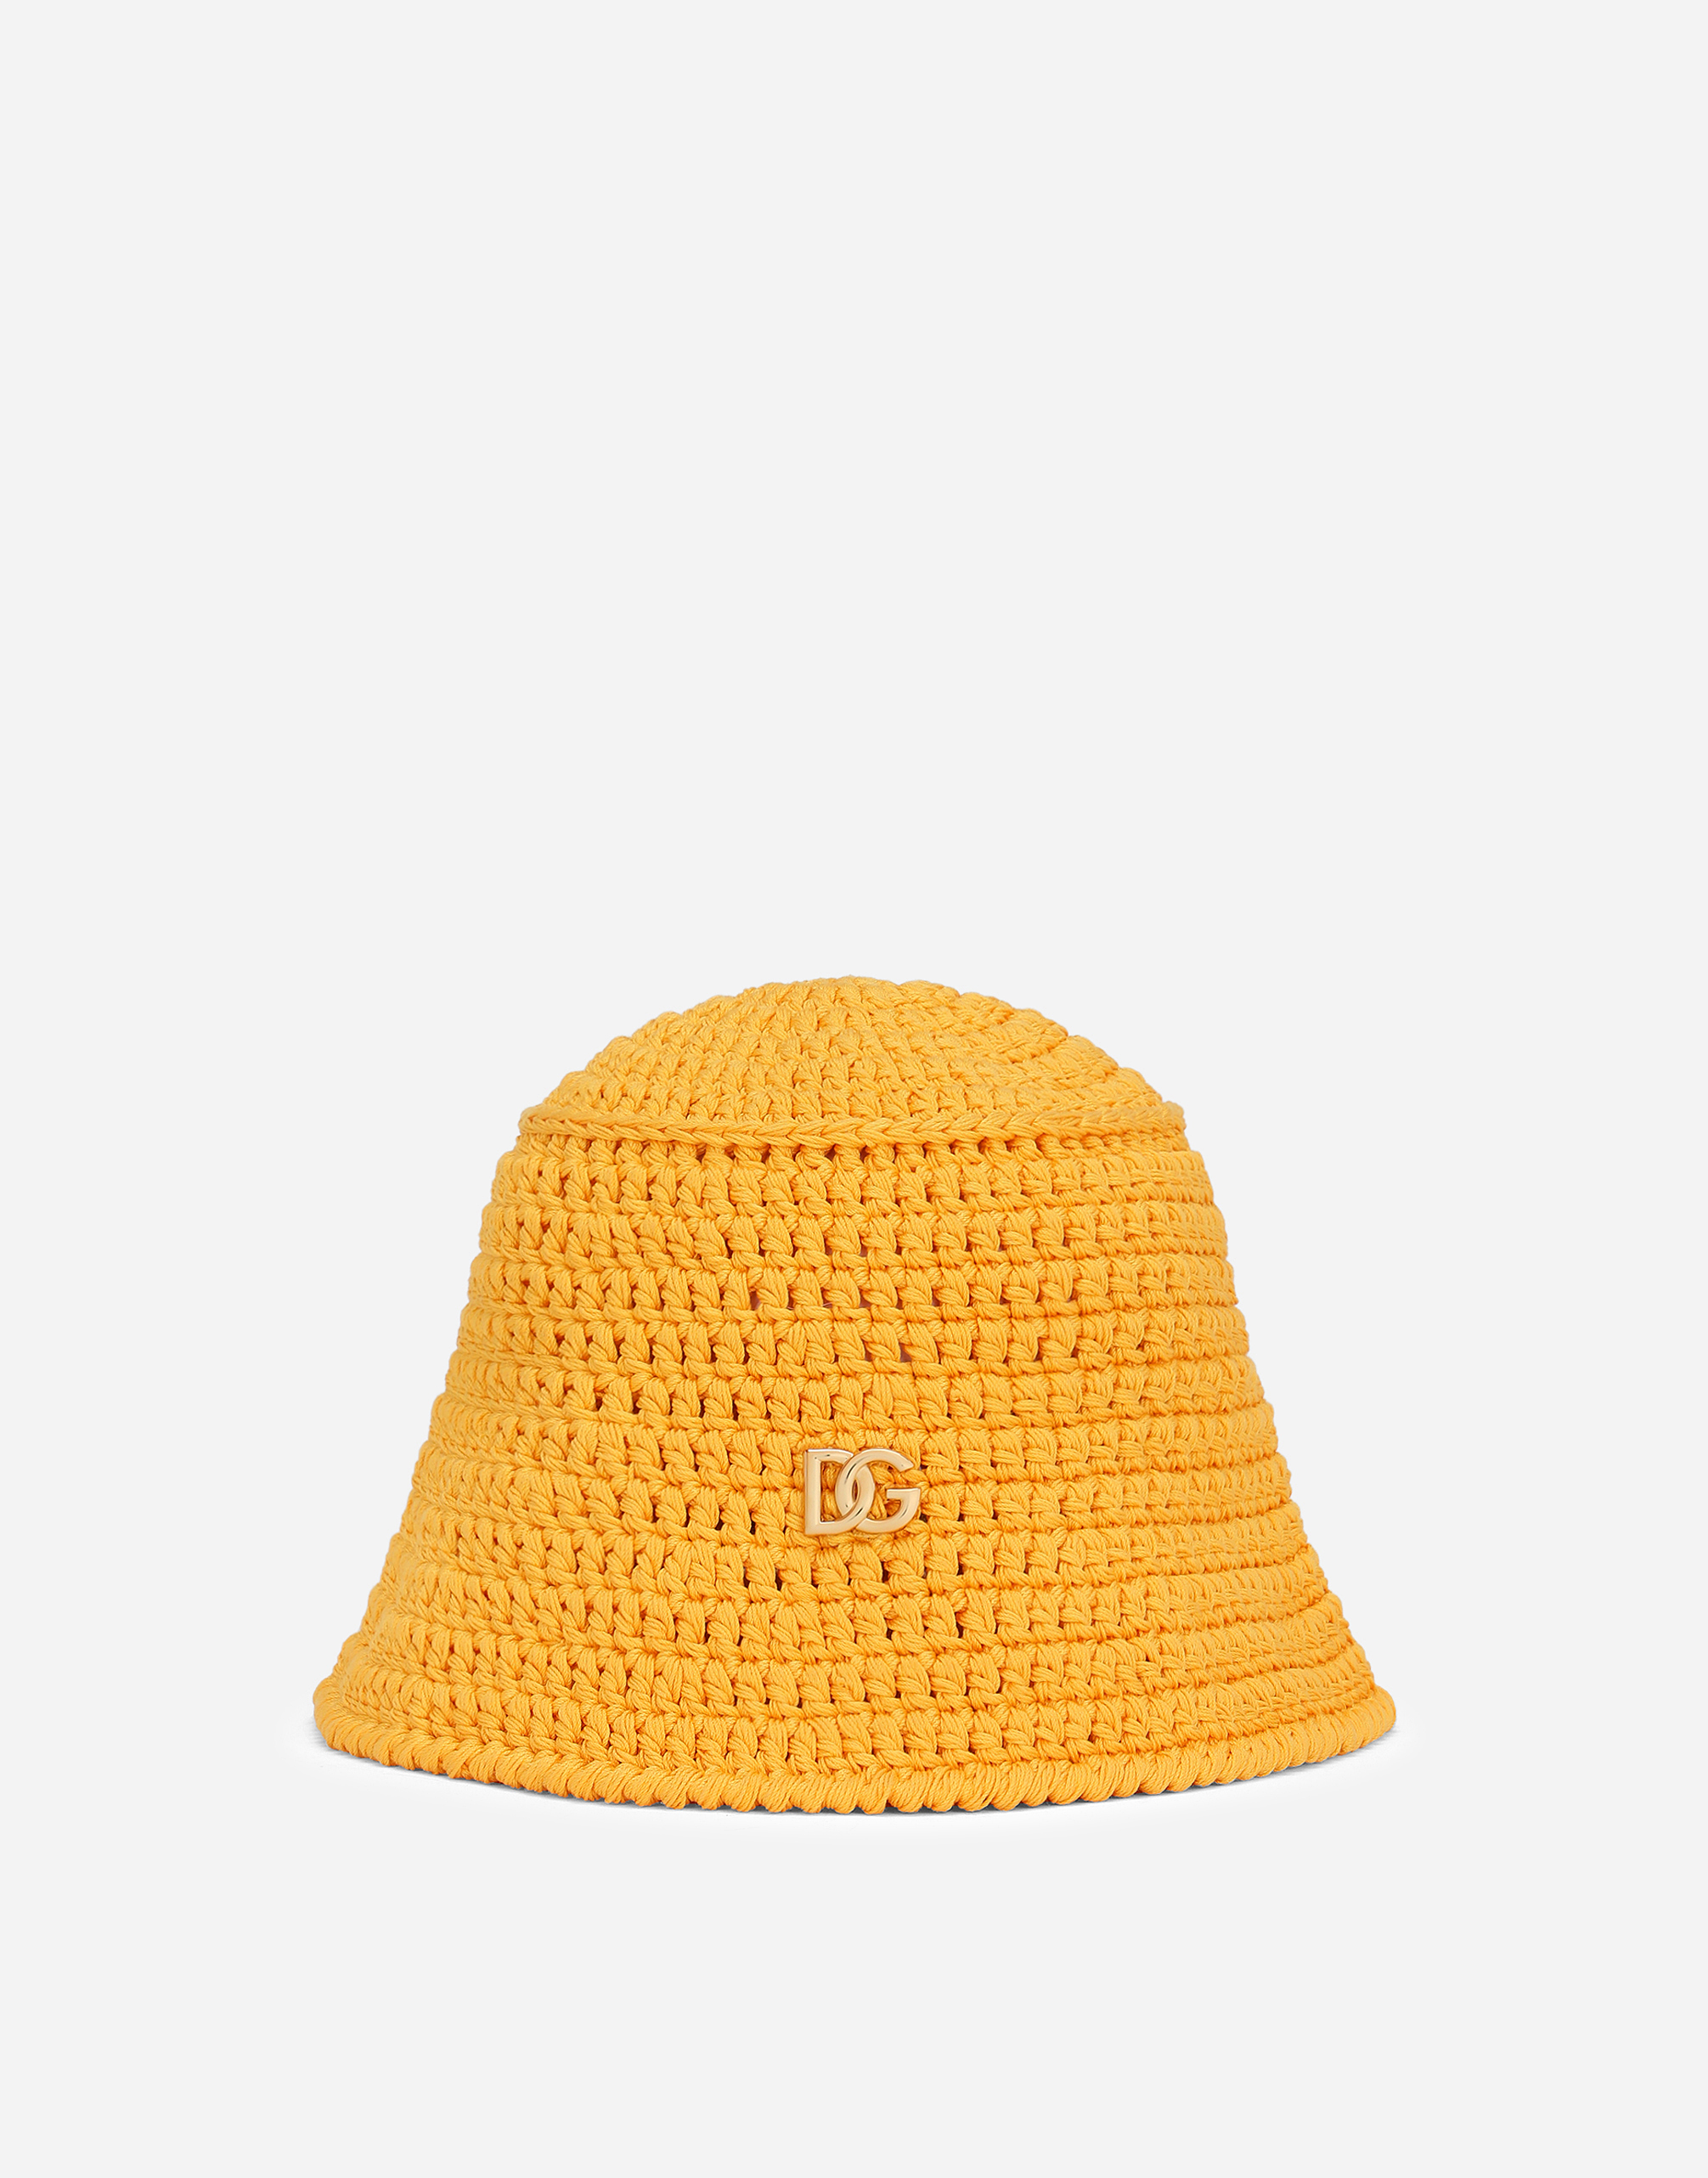 Crochet hat with DG logo in Beige